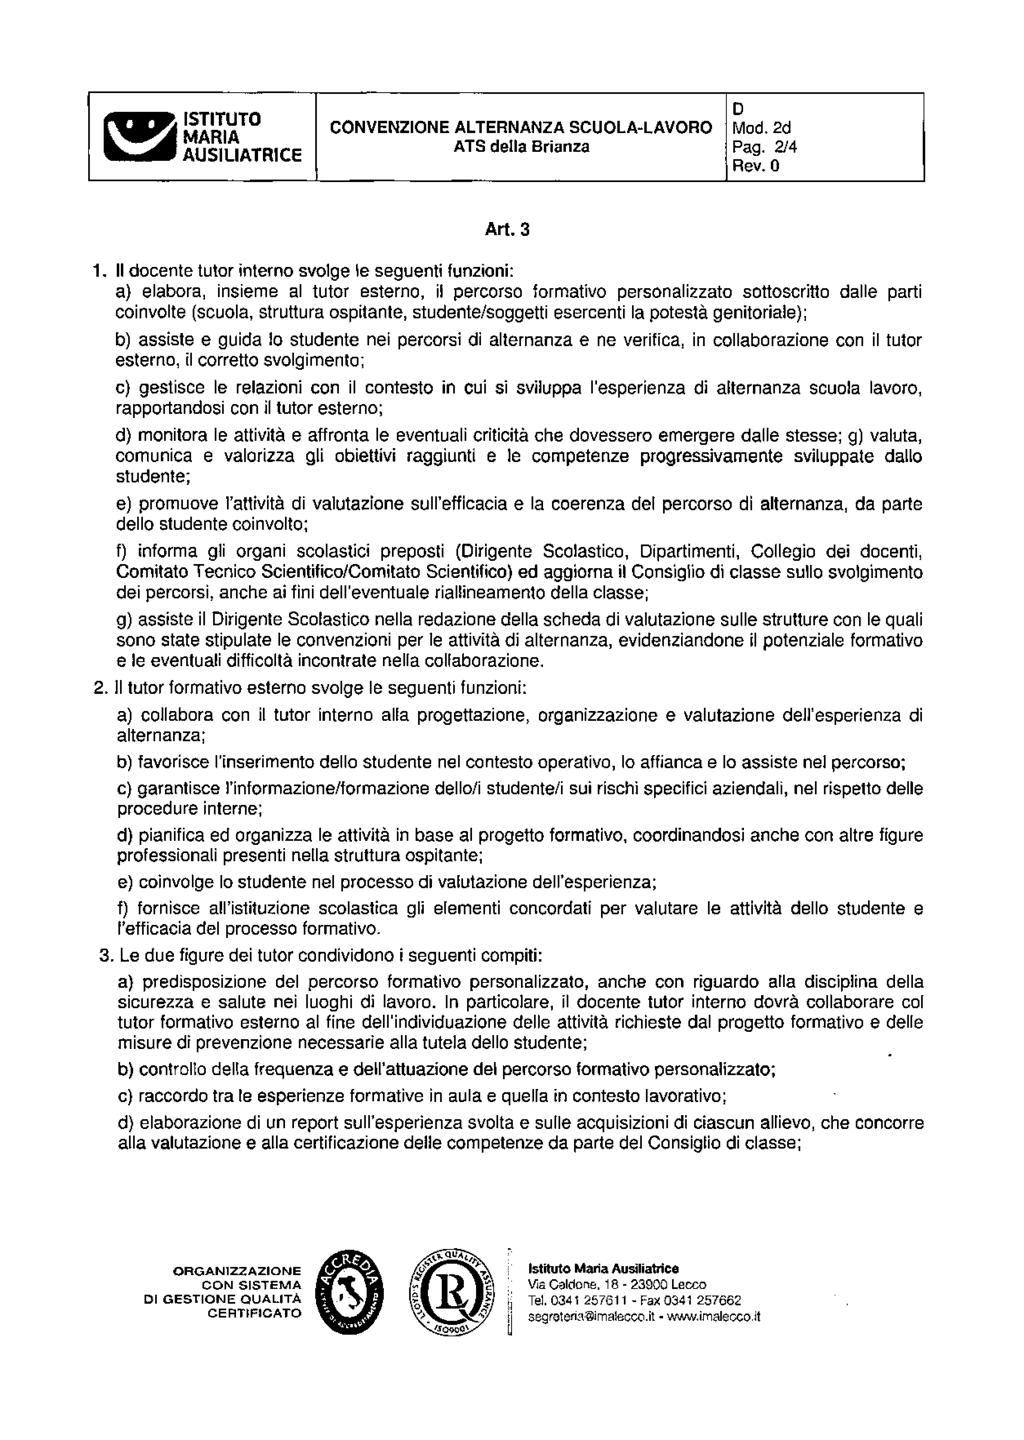 ss ISTITUTO MARIA AUSILIATRICE CONVENZIONE ALTERNANZA SCUOLA-LAVORO ATS della Brianza D Mod. 2d Pag. 2/4 Rev. 0 Art. 3 1.